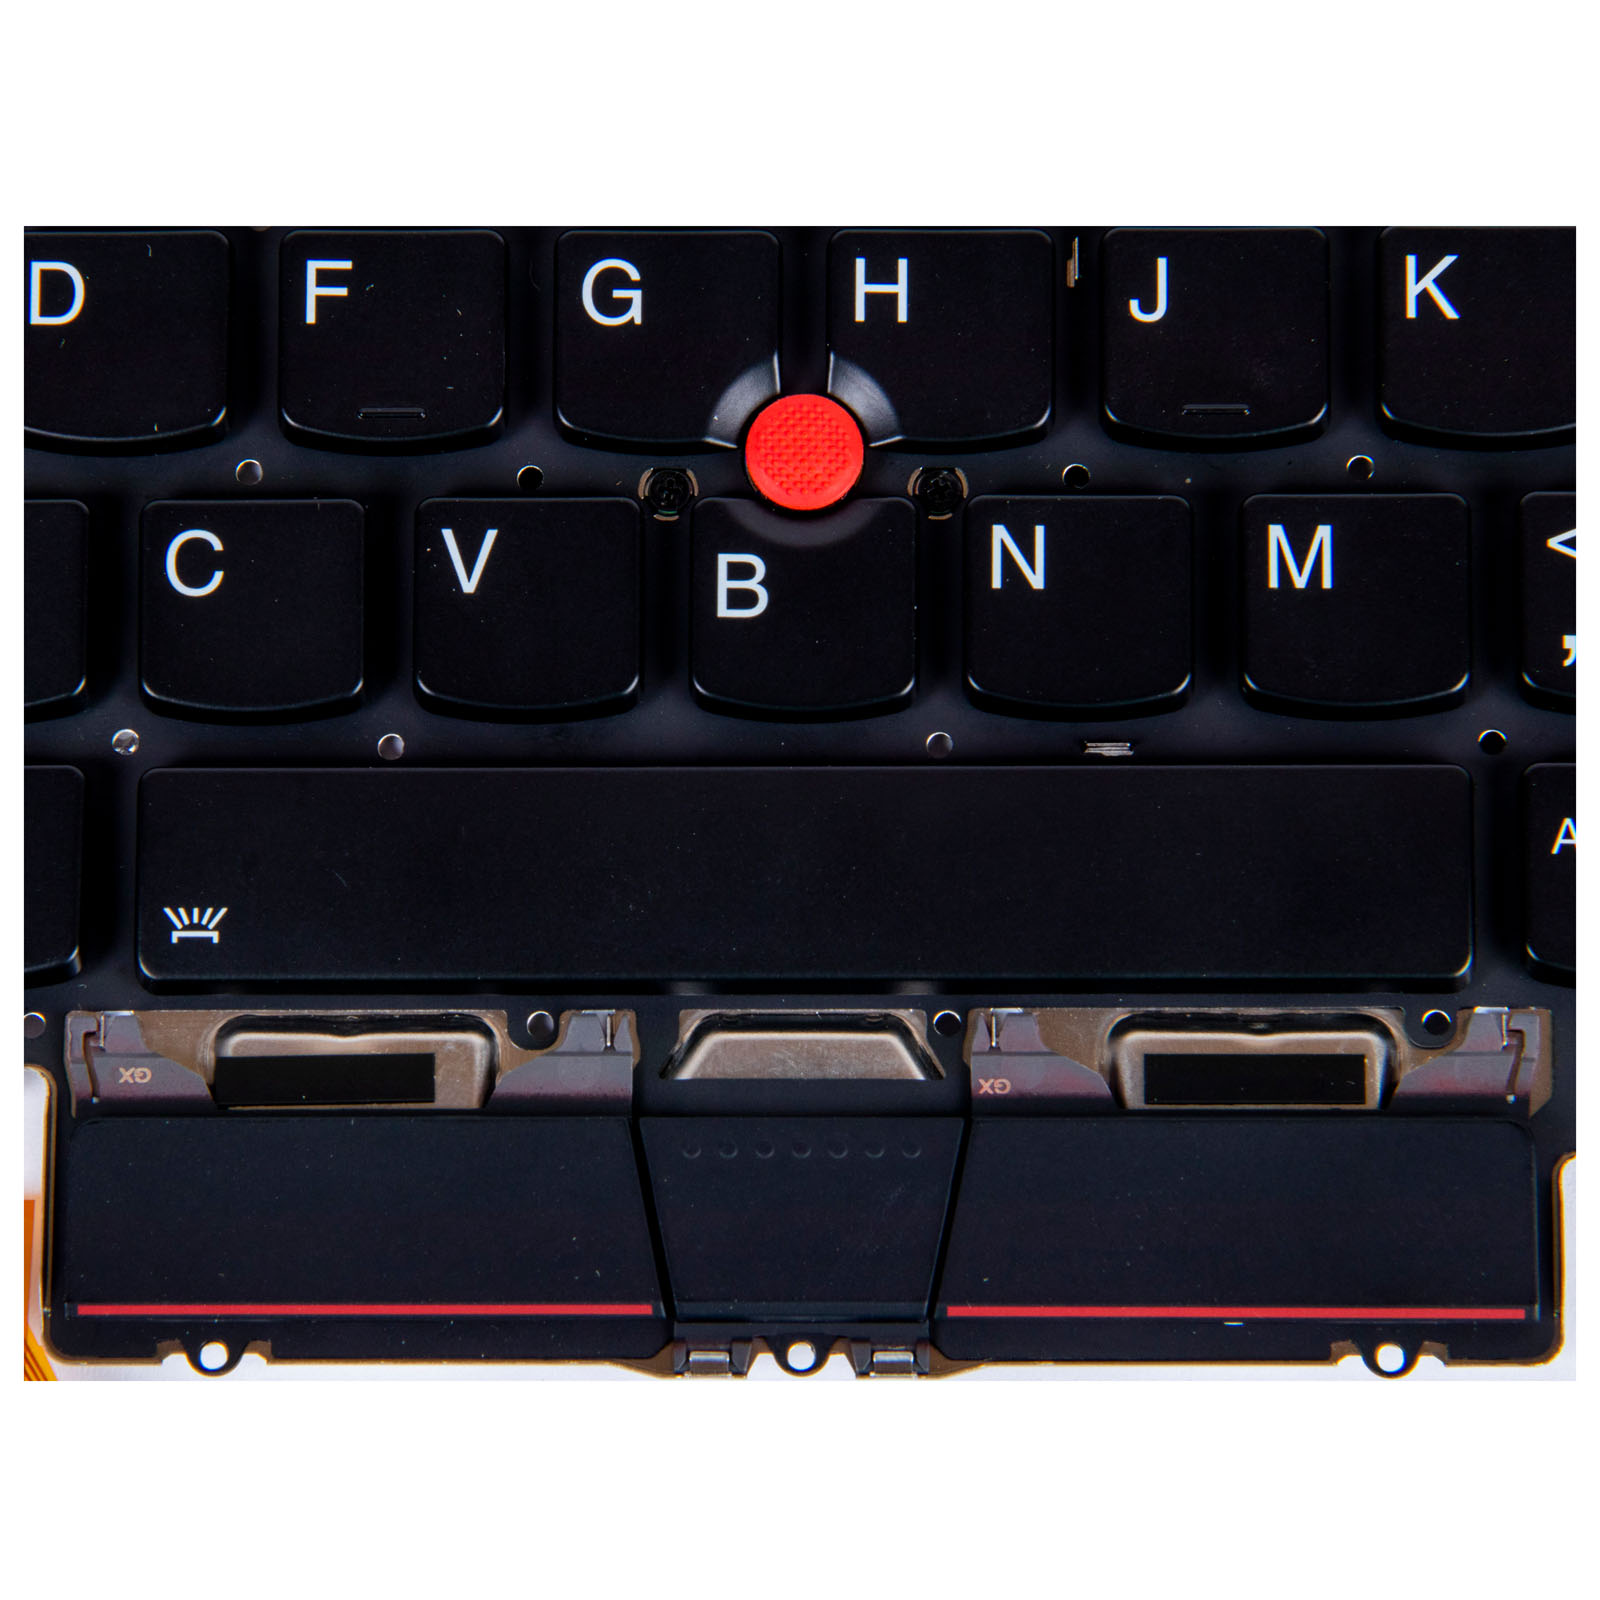 Keyboard backlit Lenovo X1 CARBON 8 2020